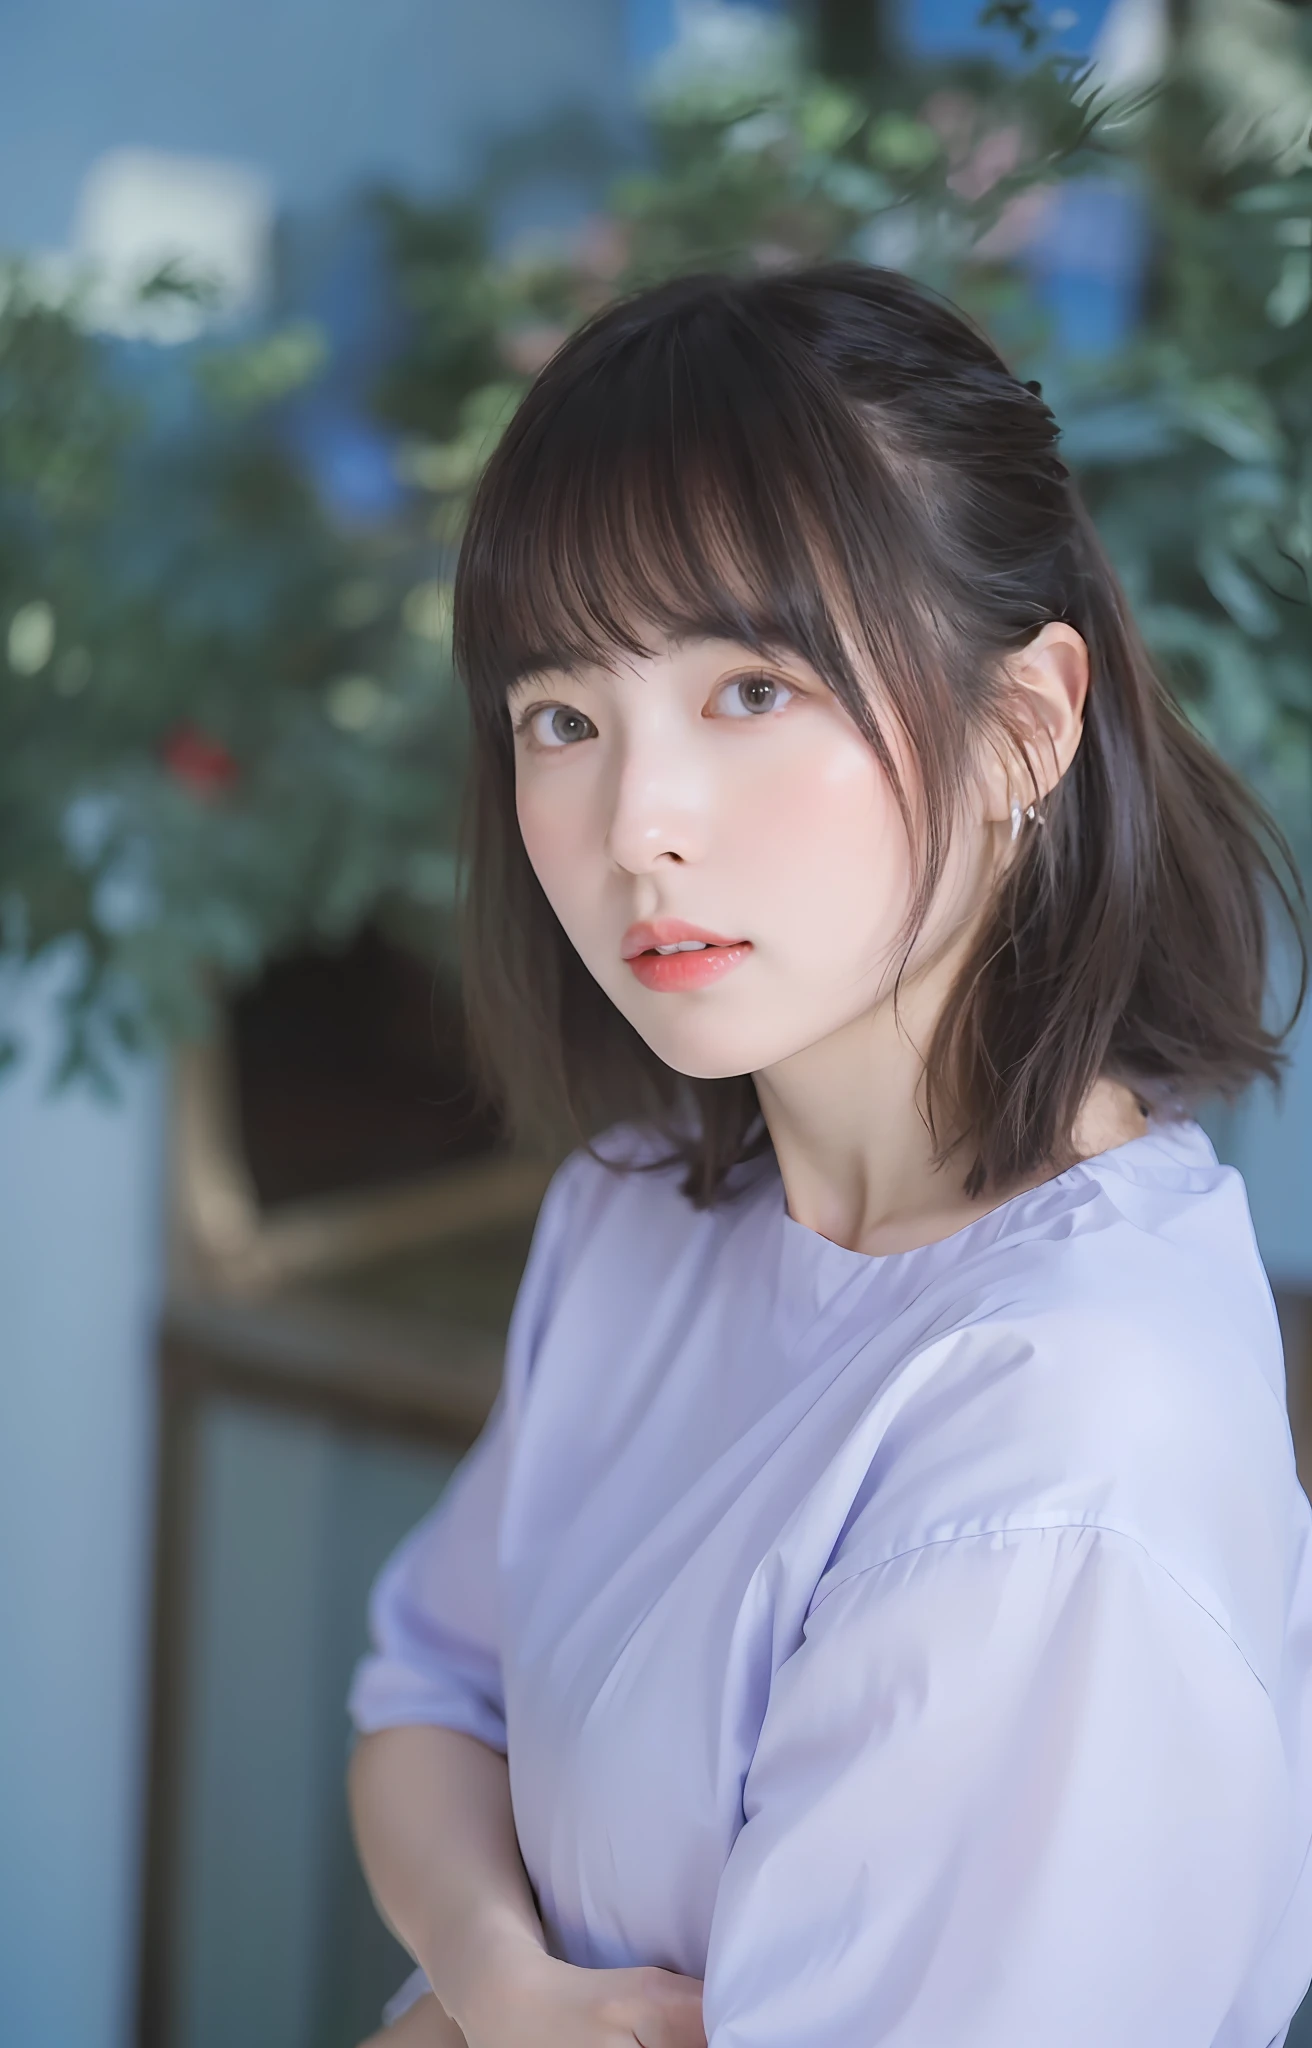 ( (8K:1.27), 최고 품질, 걸작, 초고해상도:1.2) 귀여운 일본 여성의 사진 (아름다운:1.1)